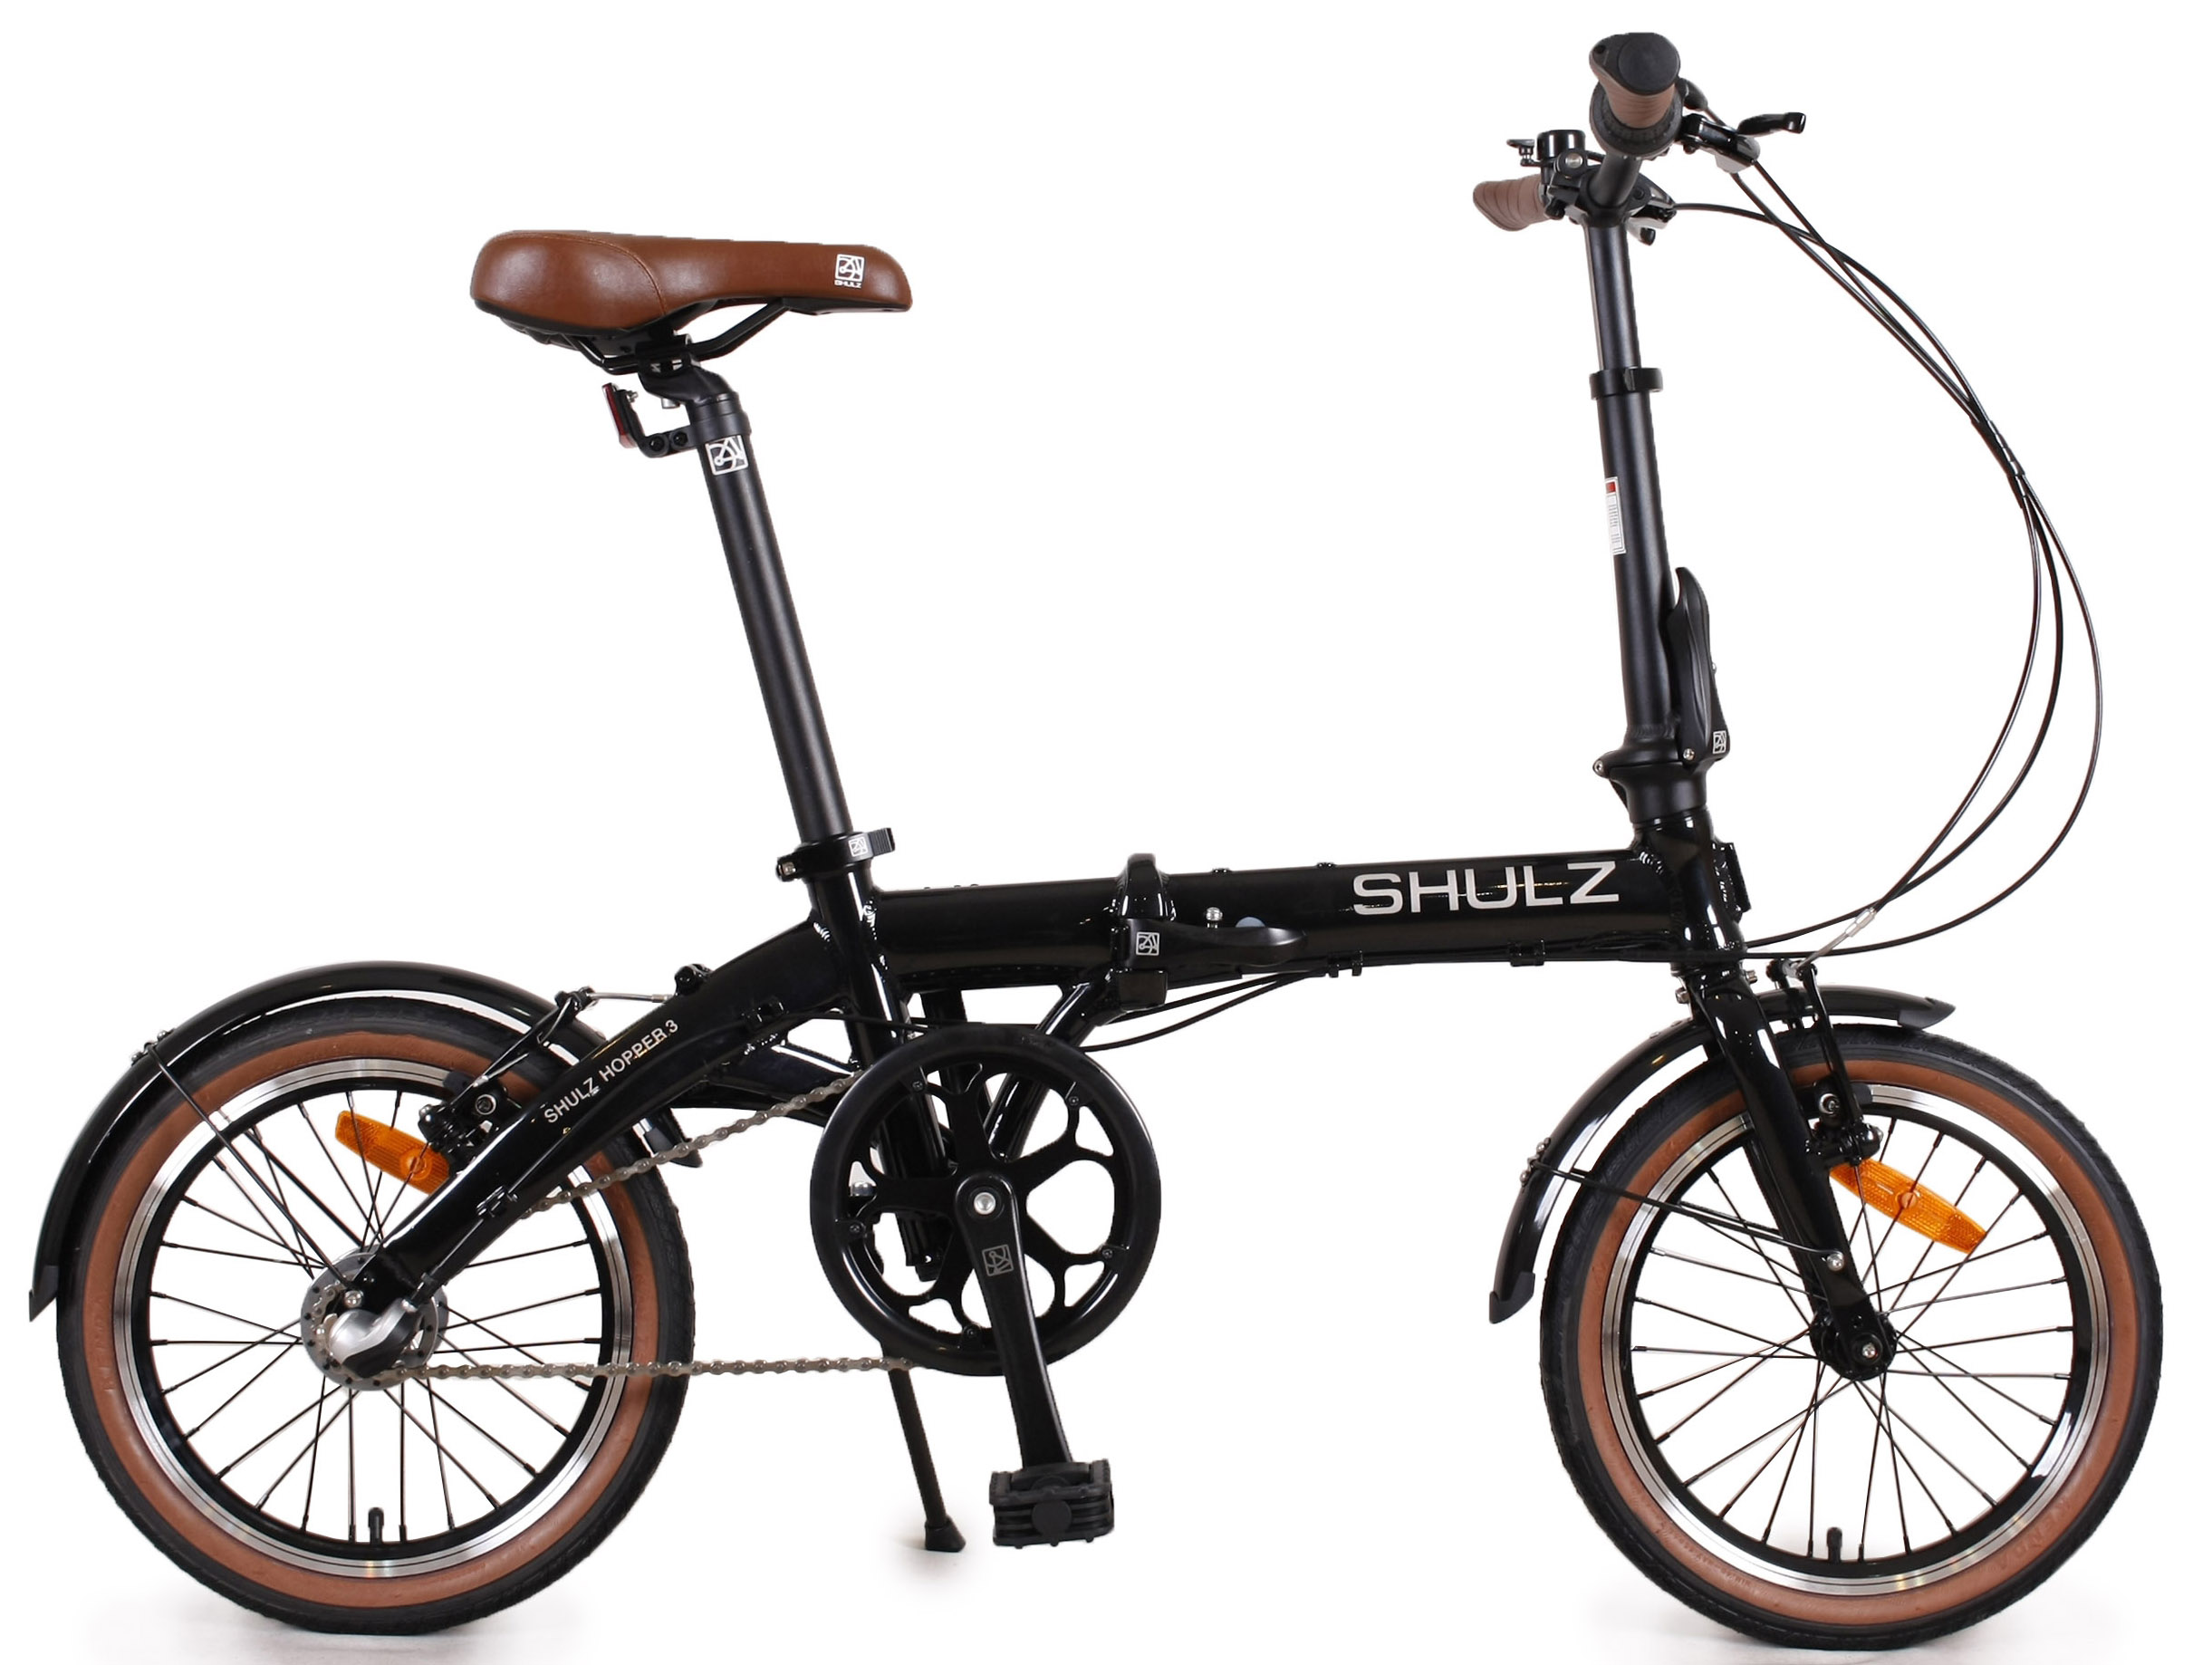  Отзывы о Складном велосипеде Shulz Hopper 3 2020